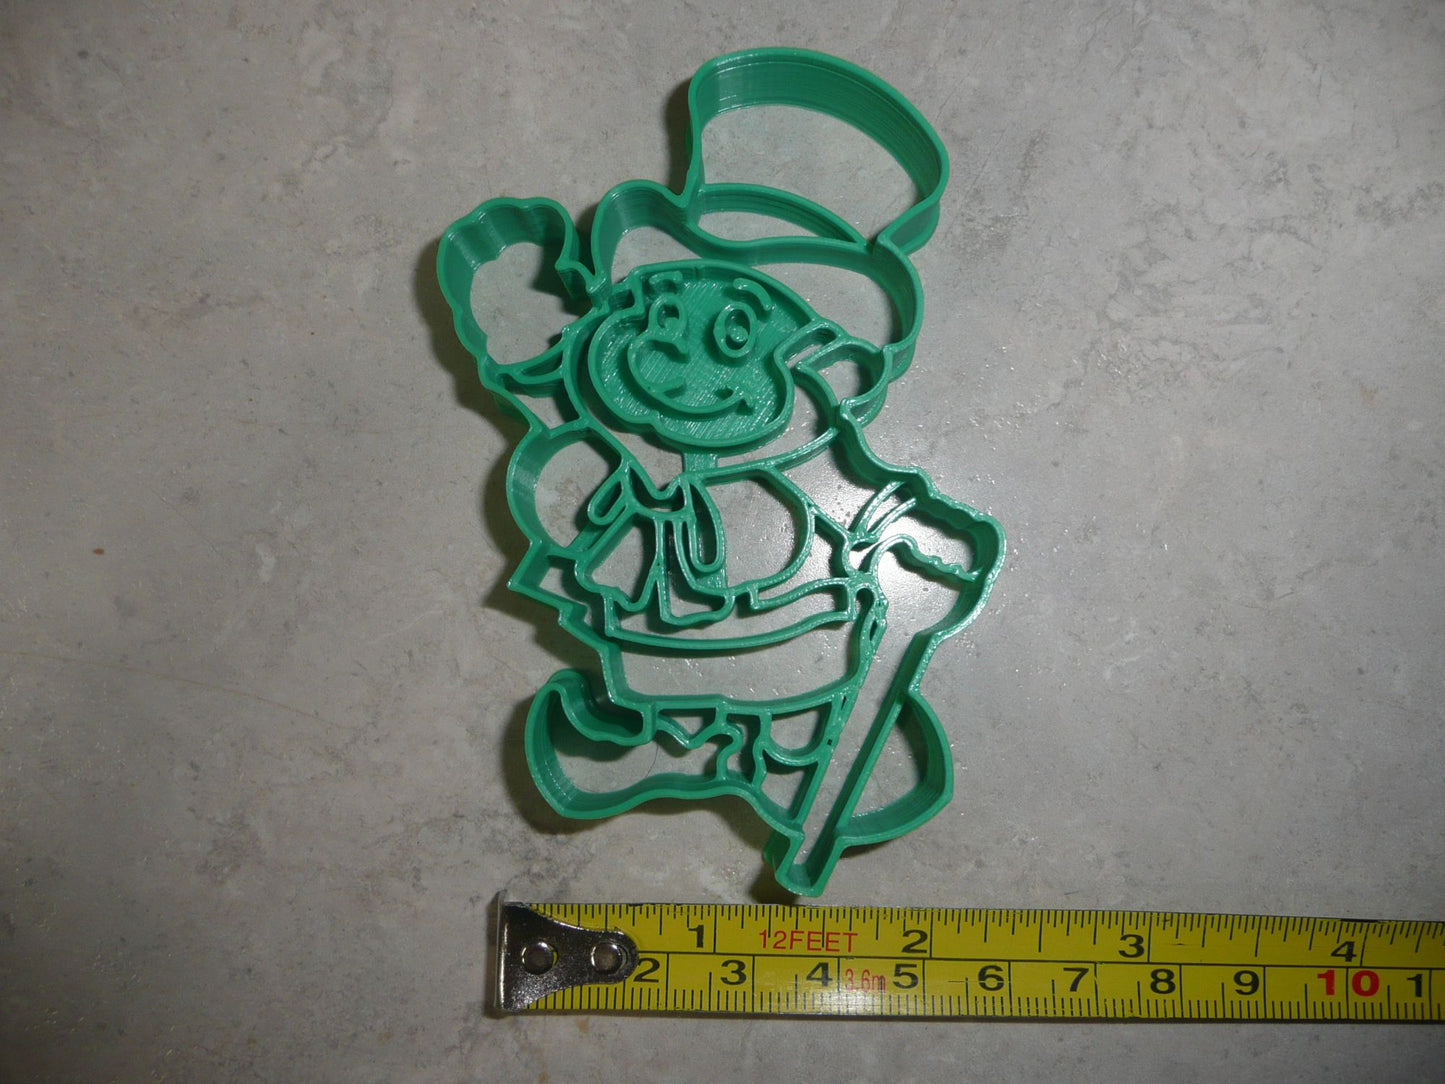 Leprechaun 3 Happy Waving St Patricks Day Cookie Cutter Made in USA PR4178